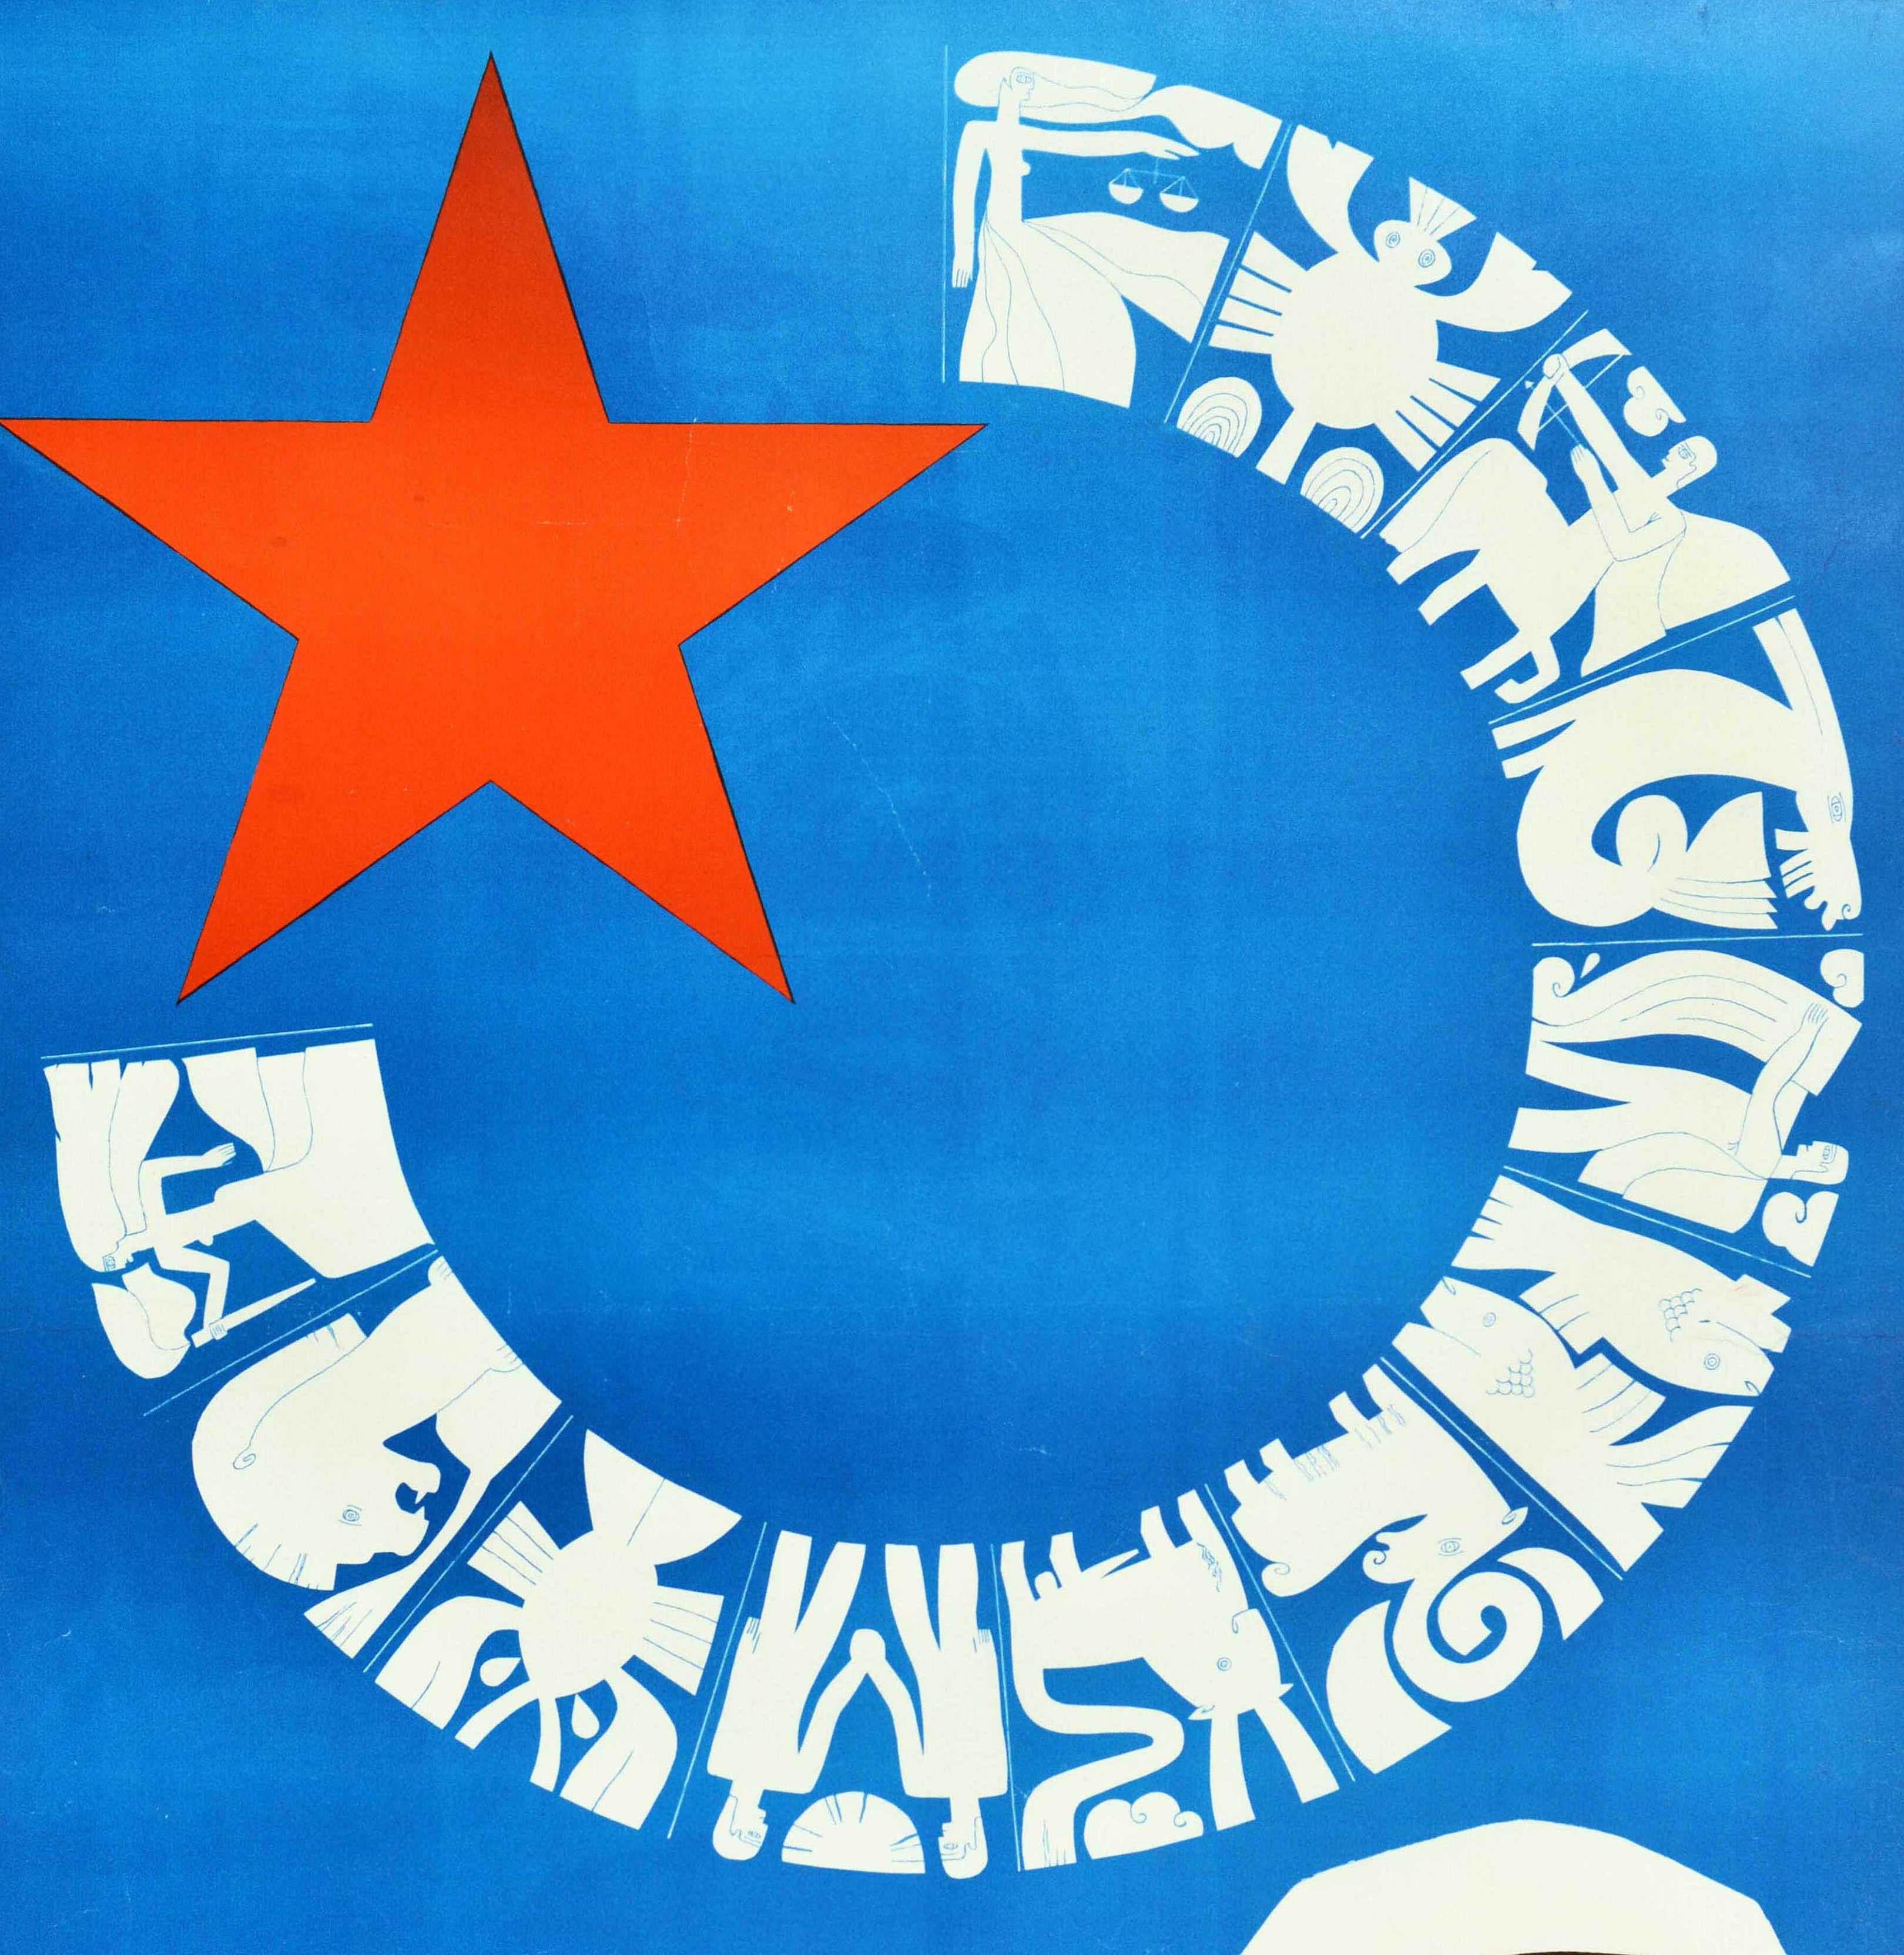 Affiche de propagande soviétique vintage originale - ? ? ???? ? ???? ? ???????? / Et il y aura une nouvelle constellation - avec une illustration d'une étoile rouge de l'URSS sur fond bleu avec des constellations d'horoscope en bloc blanc des signes